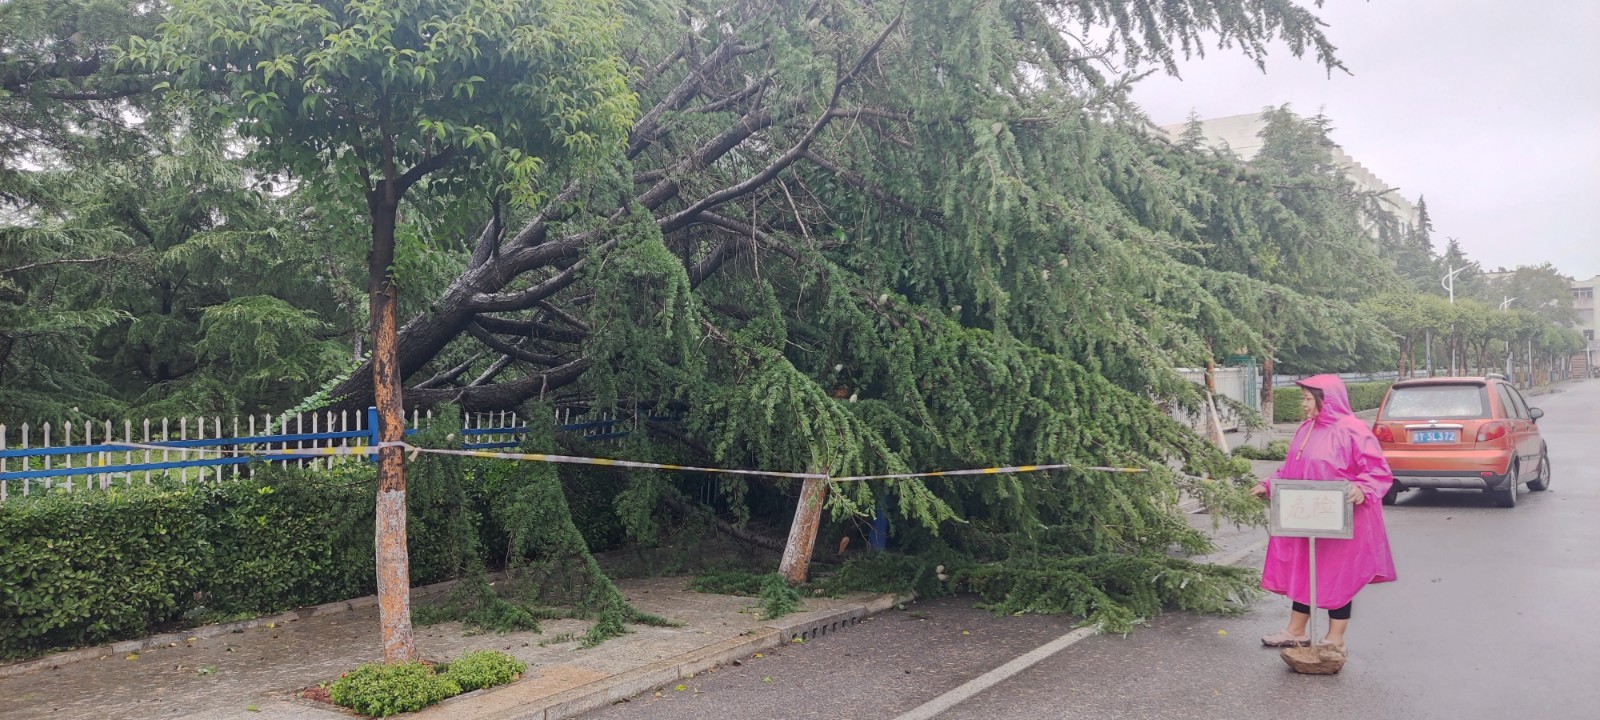 一名员工冒雨在刮倒的大树旁设置警戒线、警示牌